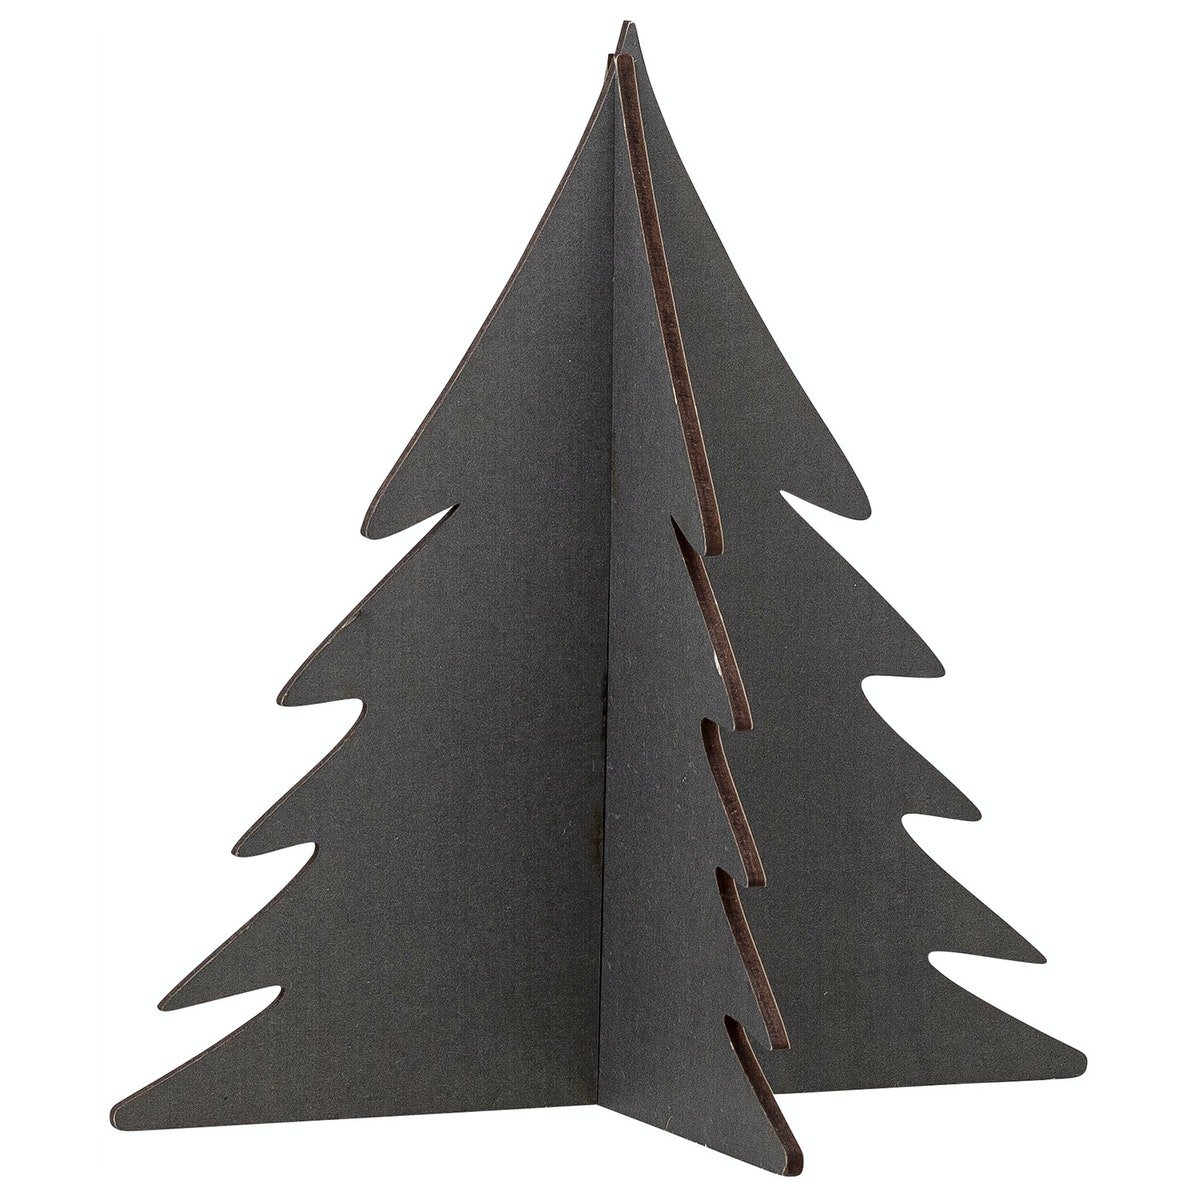 Pelan, Juletræ by Bloomingville (D: 15 cm. H: 12 cm. B: 16 cm., Grøn)